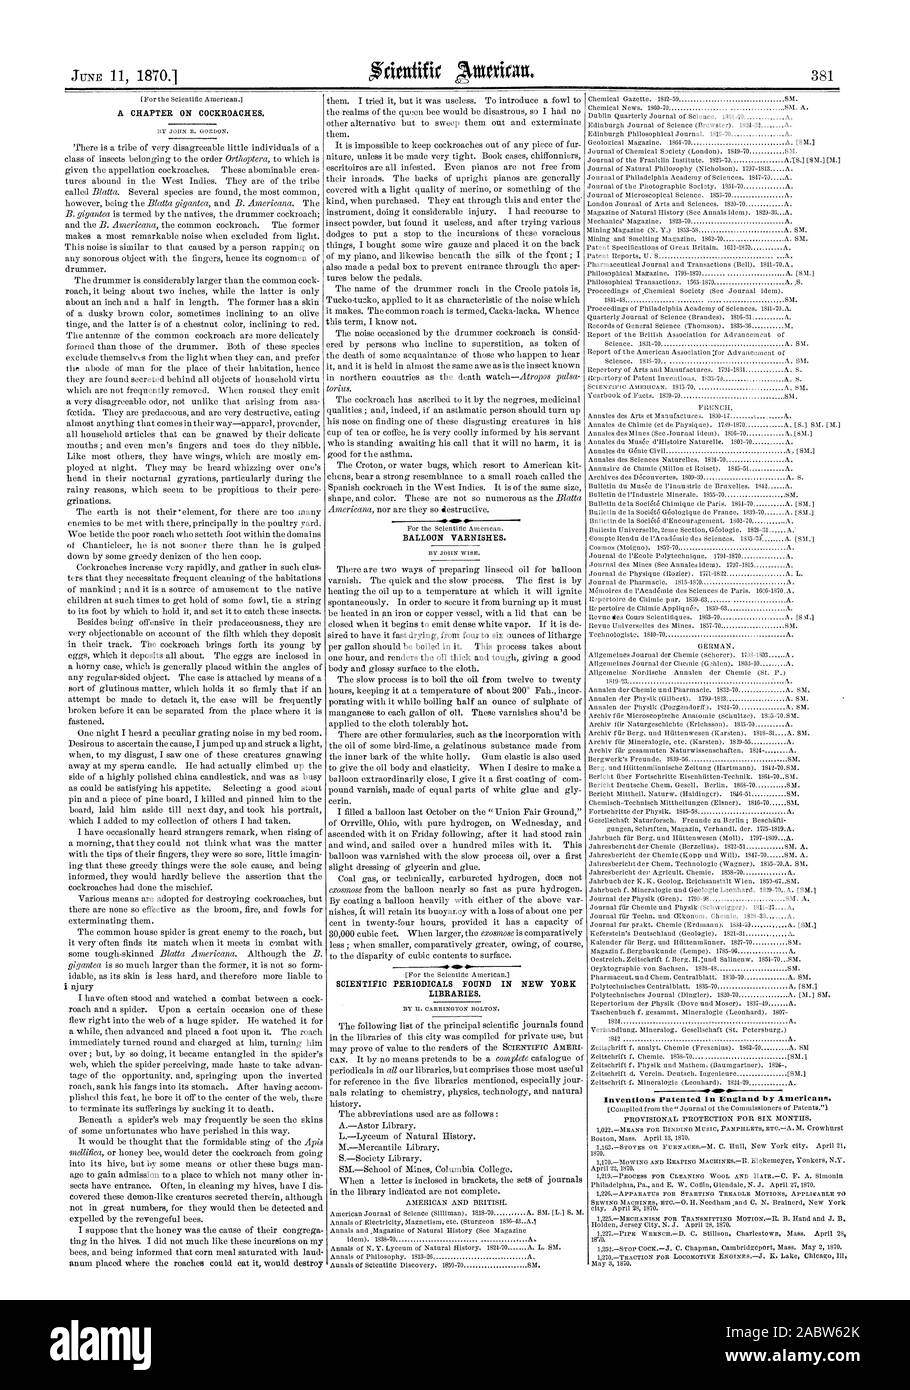 Vernis de ballon. Périodiques scientifiques TROUVÉS DANS LES BIBLIOTHÈQUES DE NEW YORK., Scientific American, 1870-06-11 Banque D'Images